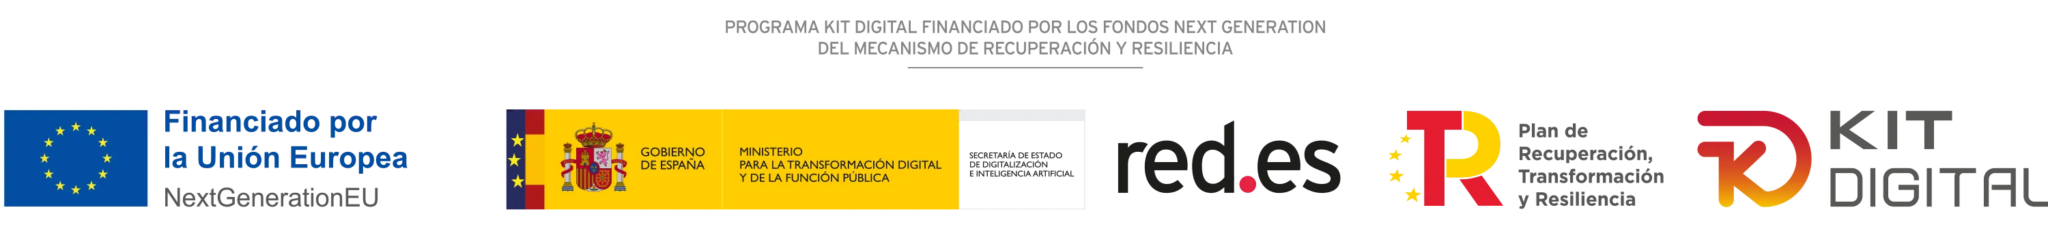 WEB-FINANCIADA-POR-LOS-FONDOS-NEXT-GENERATION